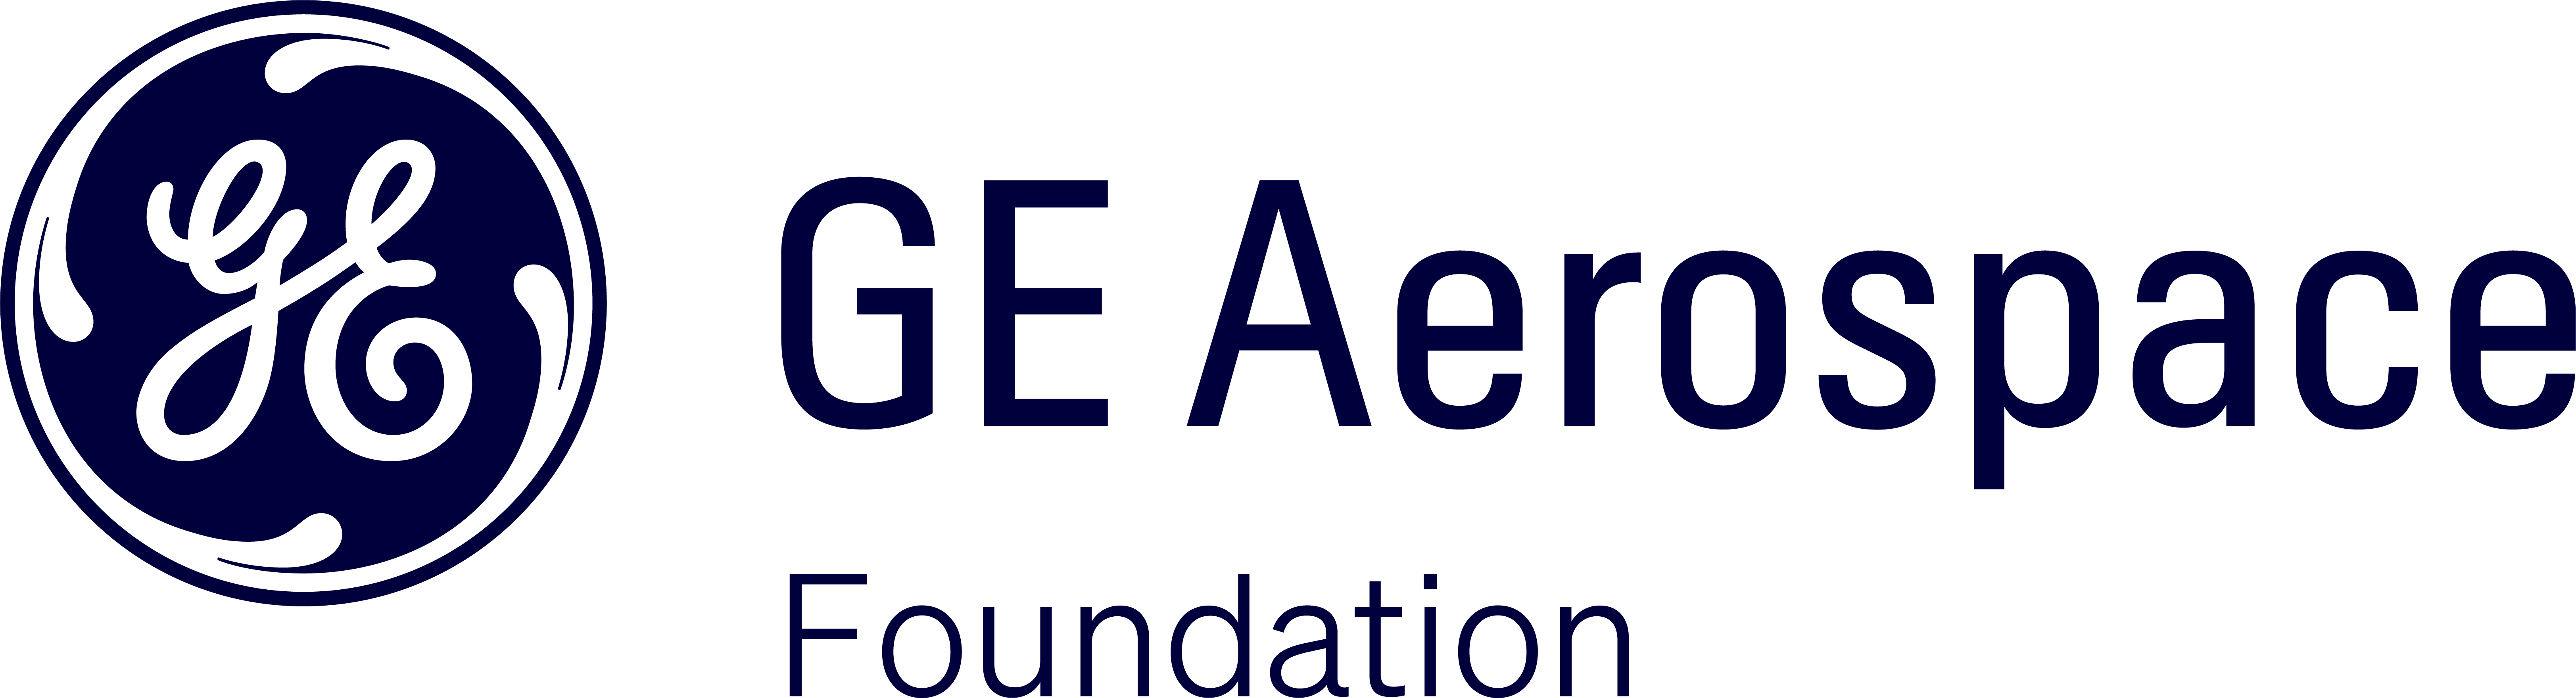 GE Aerospace Foundation logo in blue